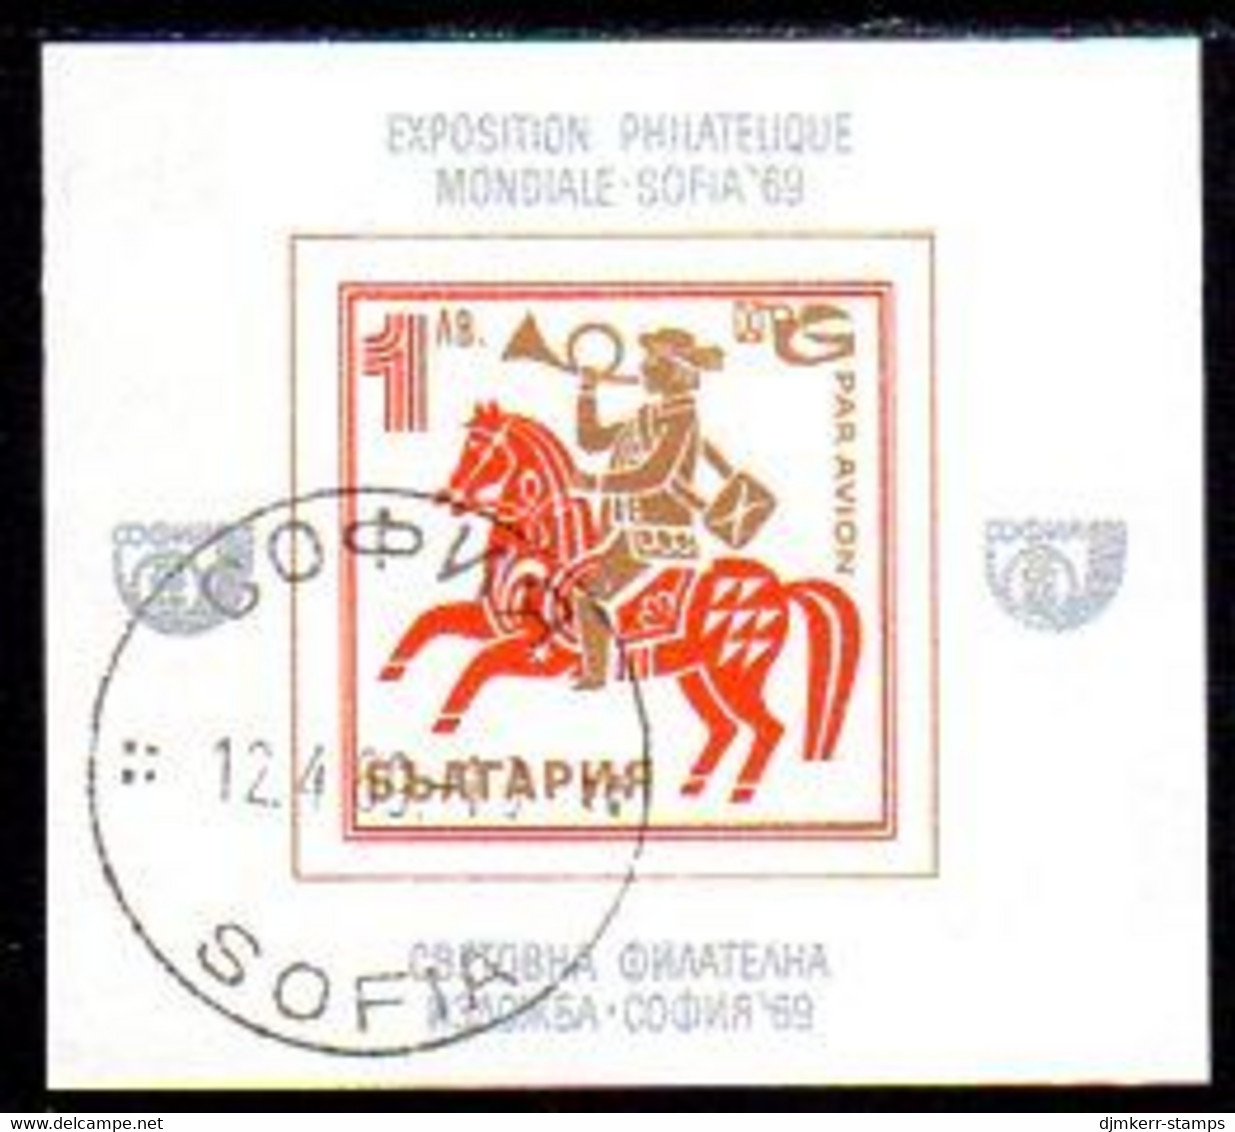 BULGARIA 1969 Transport: Post Rider Block  Used.  Michel Block 24 - Hojas Bloque